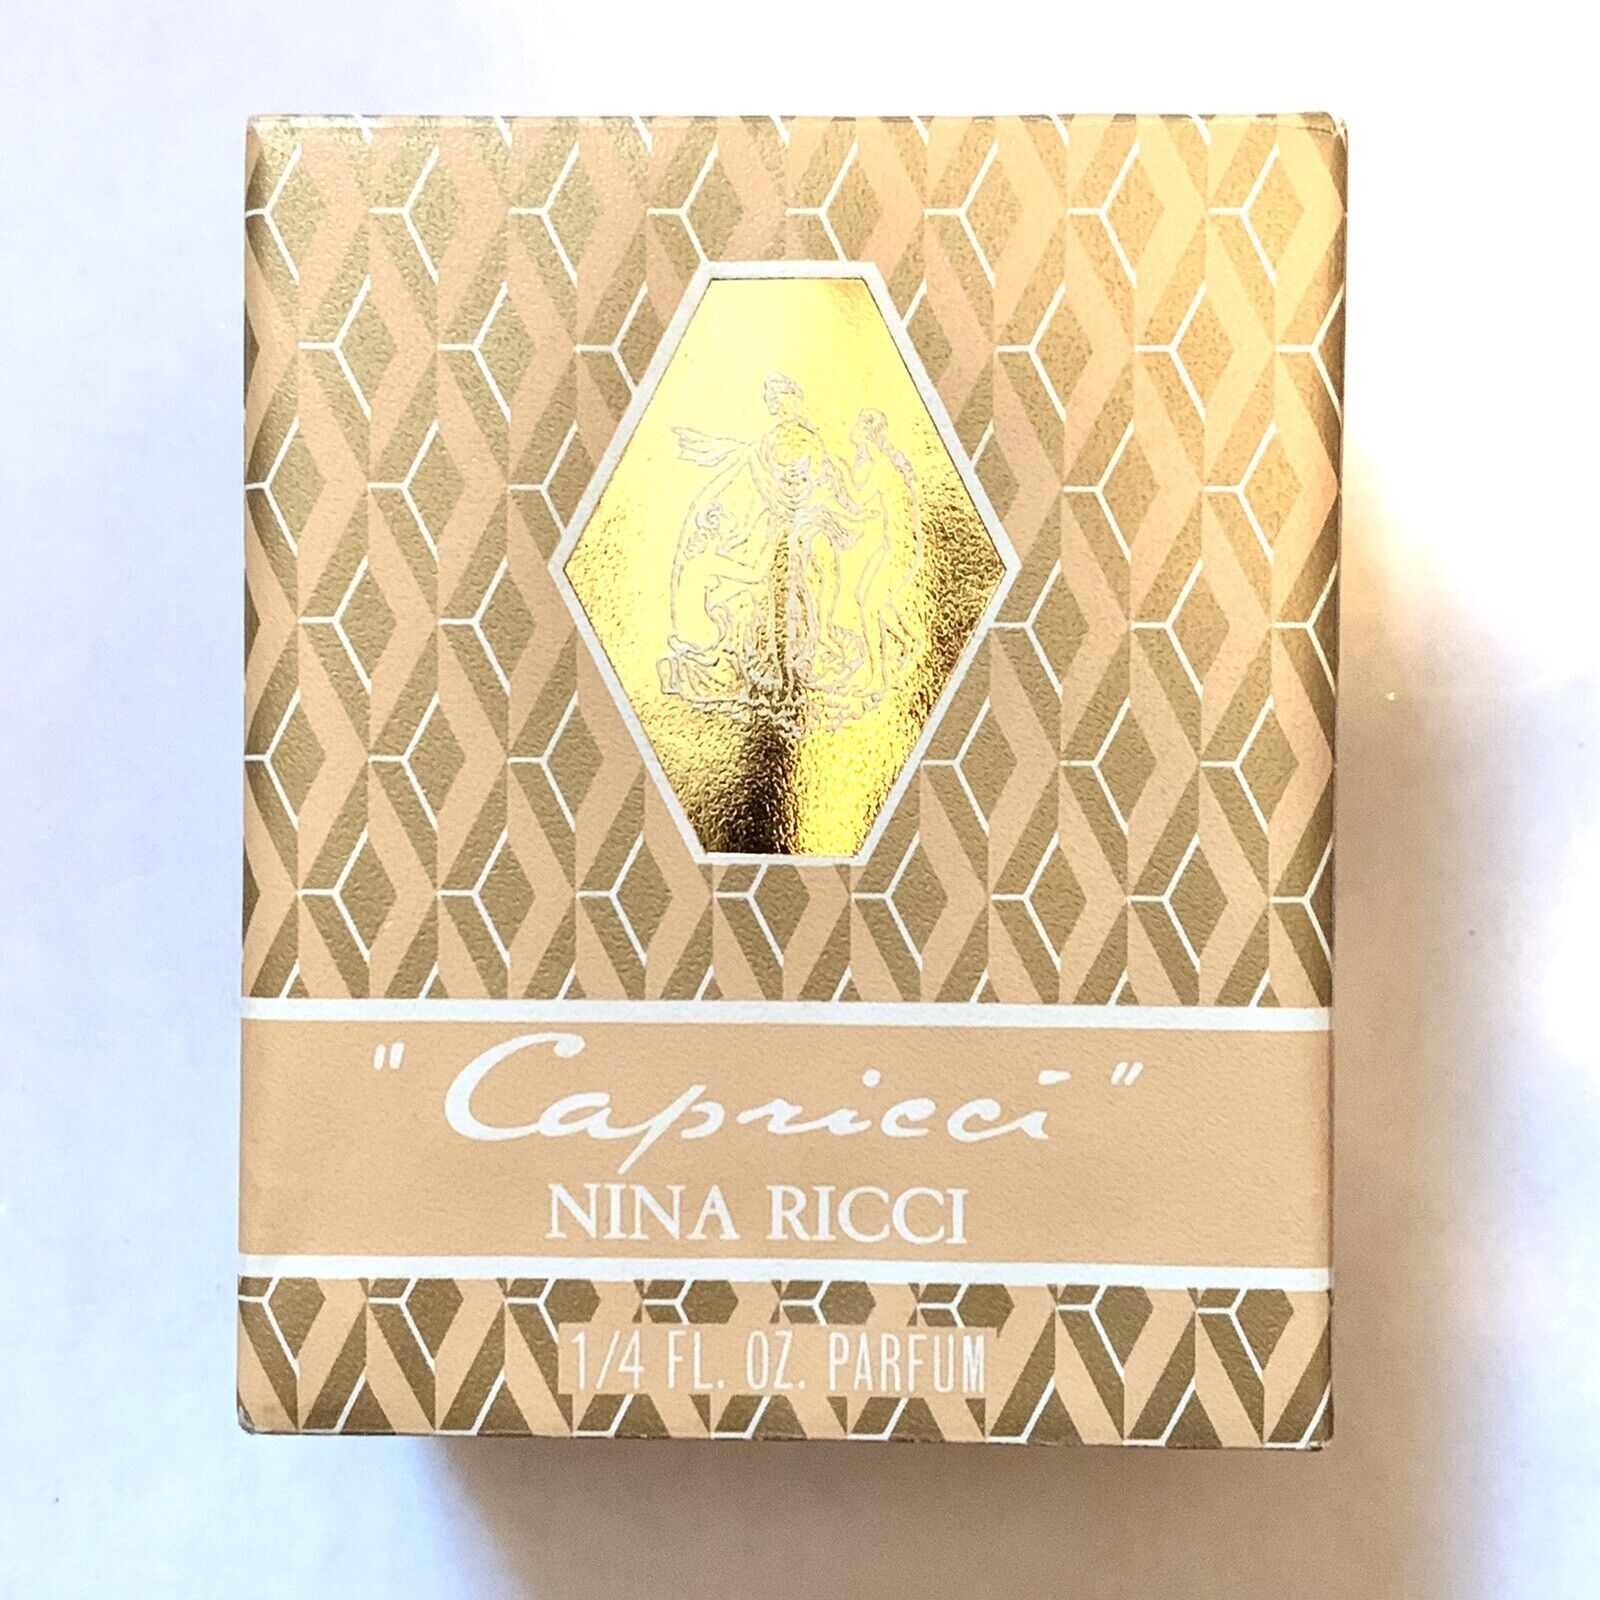 Vtg Sealed NINA RICCI Capricci Perfume 1/4 .25 Oz Parfum Box FULL